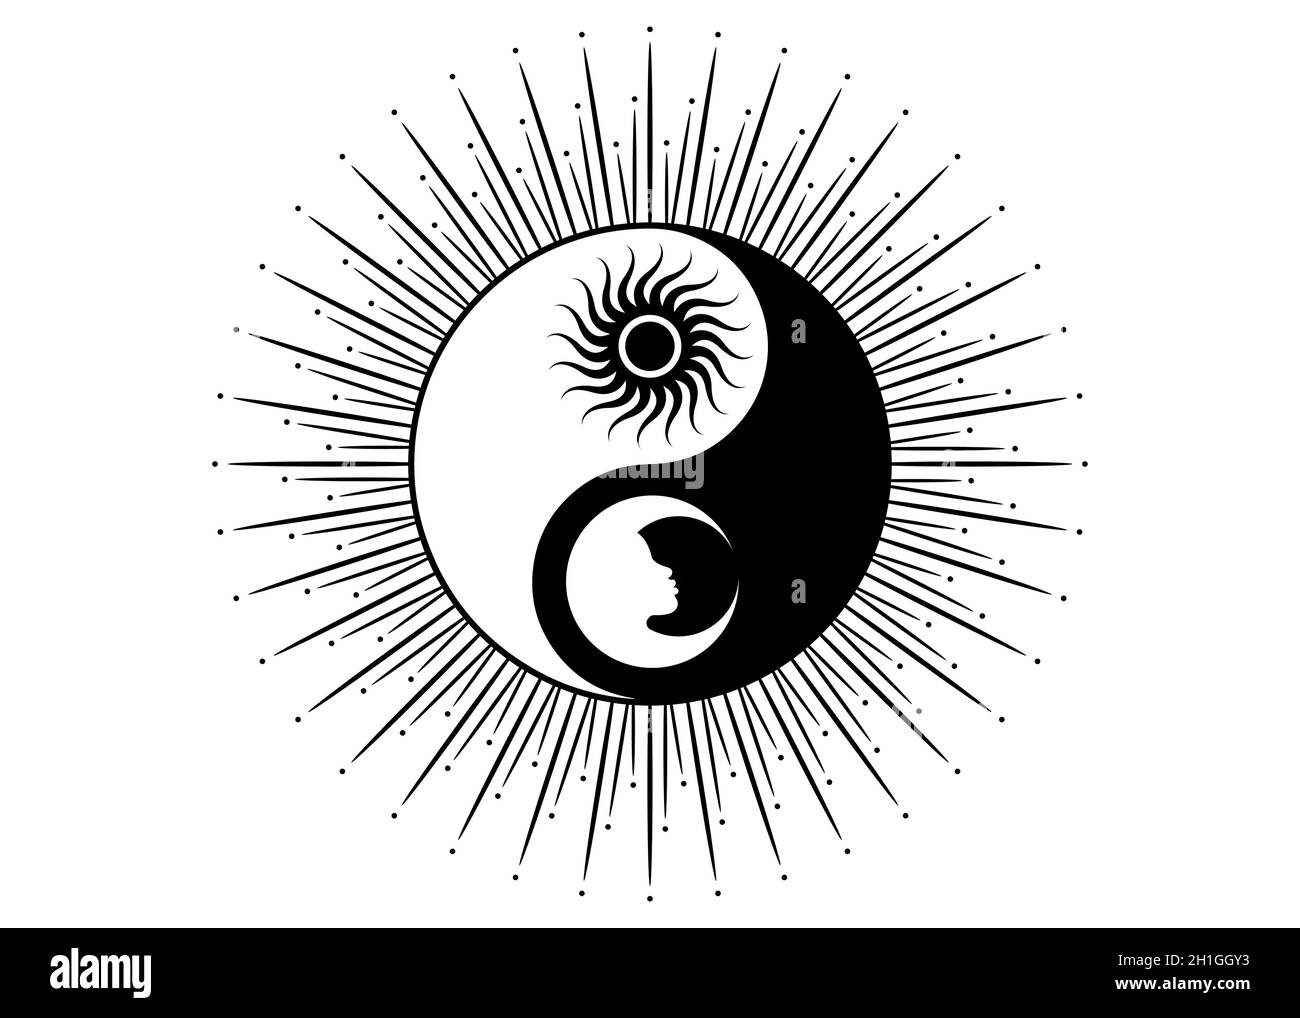 Taoism Tattoo Ideas: Tattoos That Represent The Tao – MrInkwells